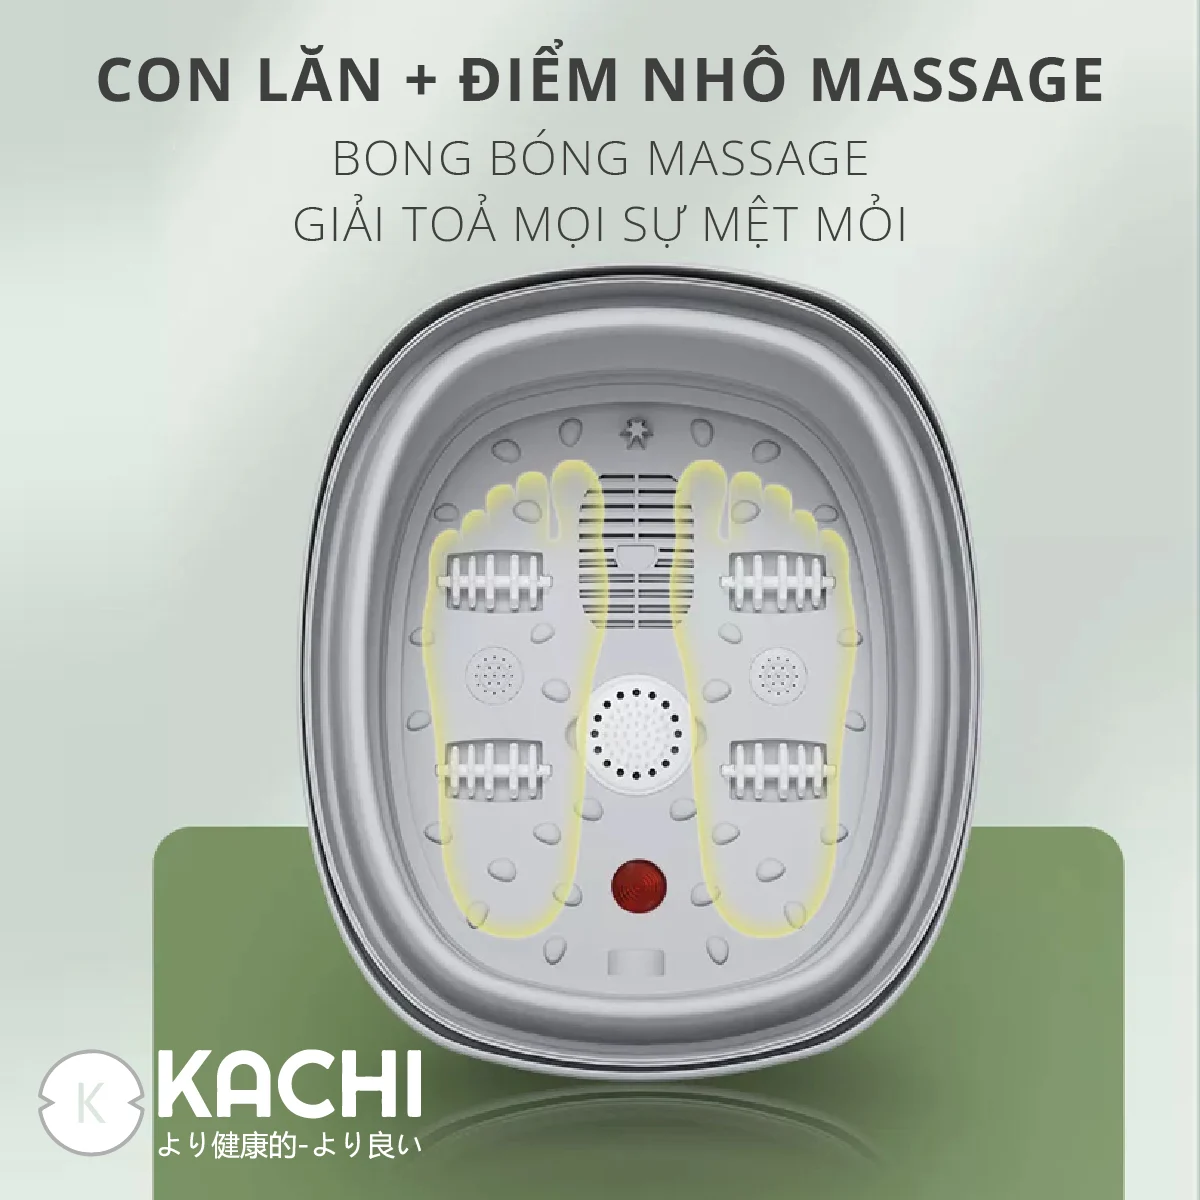 Bồn ngâm chân hồng ngoại massage xếp gọn Kachi MK344 - Hàng chính hãng